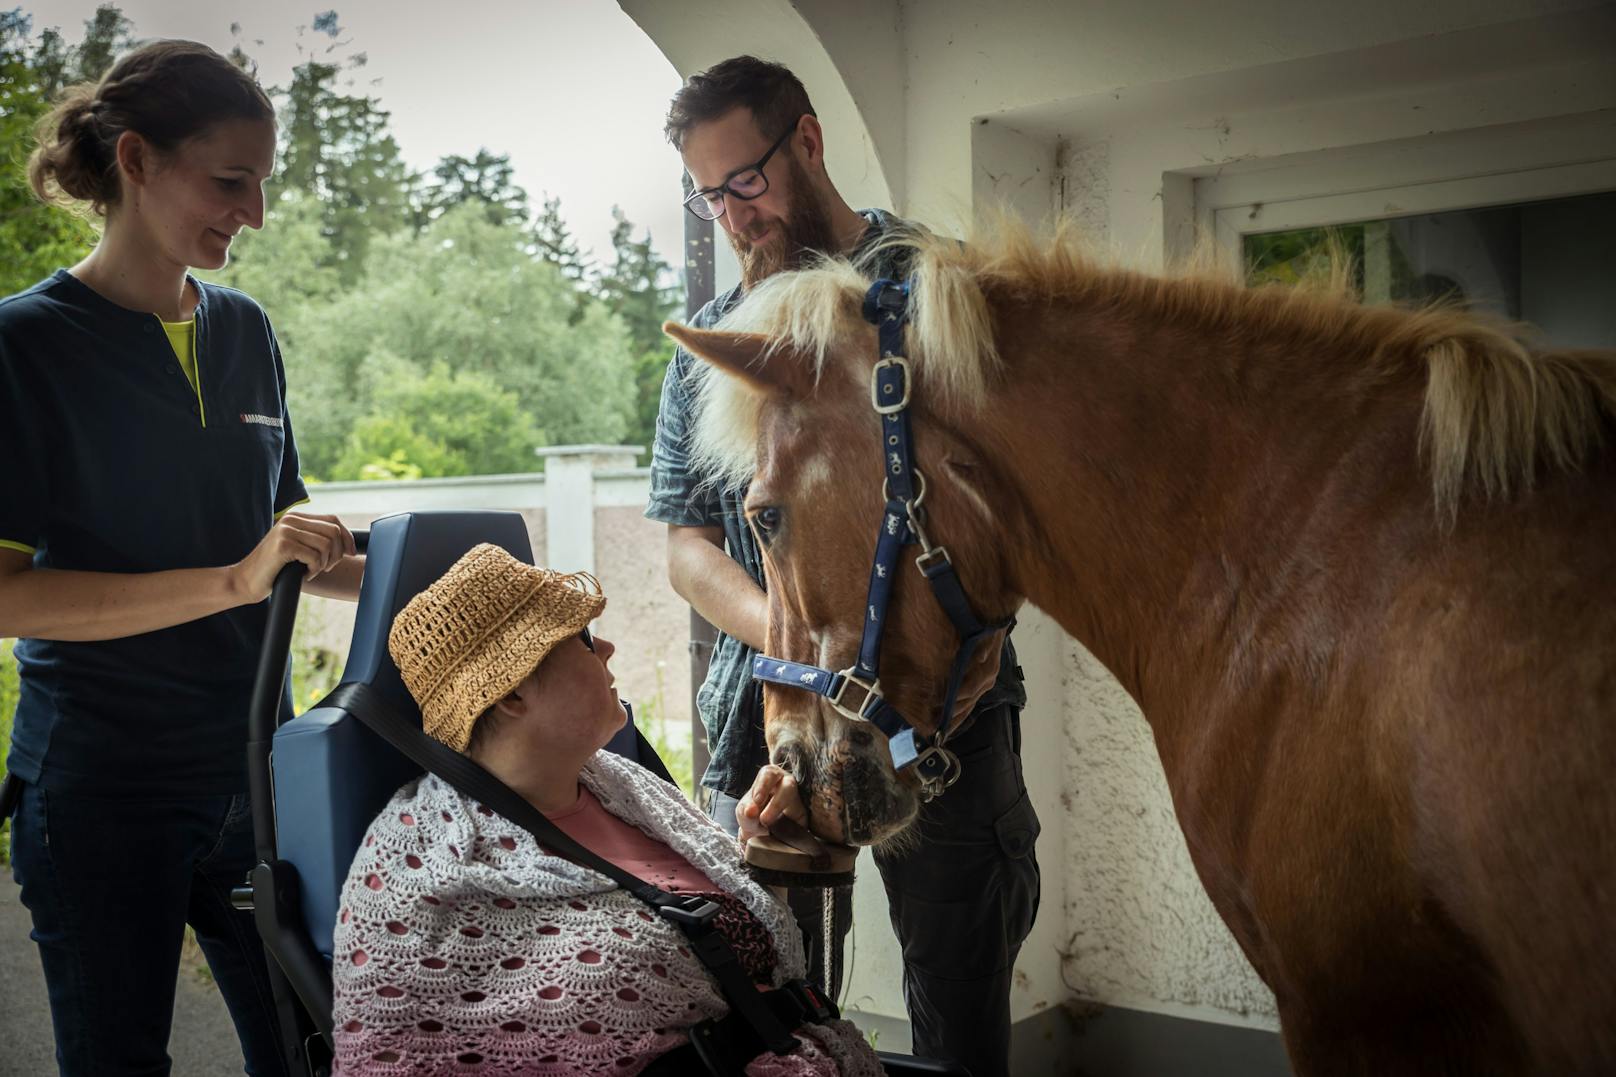 Todkranke Karin durfte ein letztes Mal ihr Pferd sehen